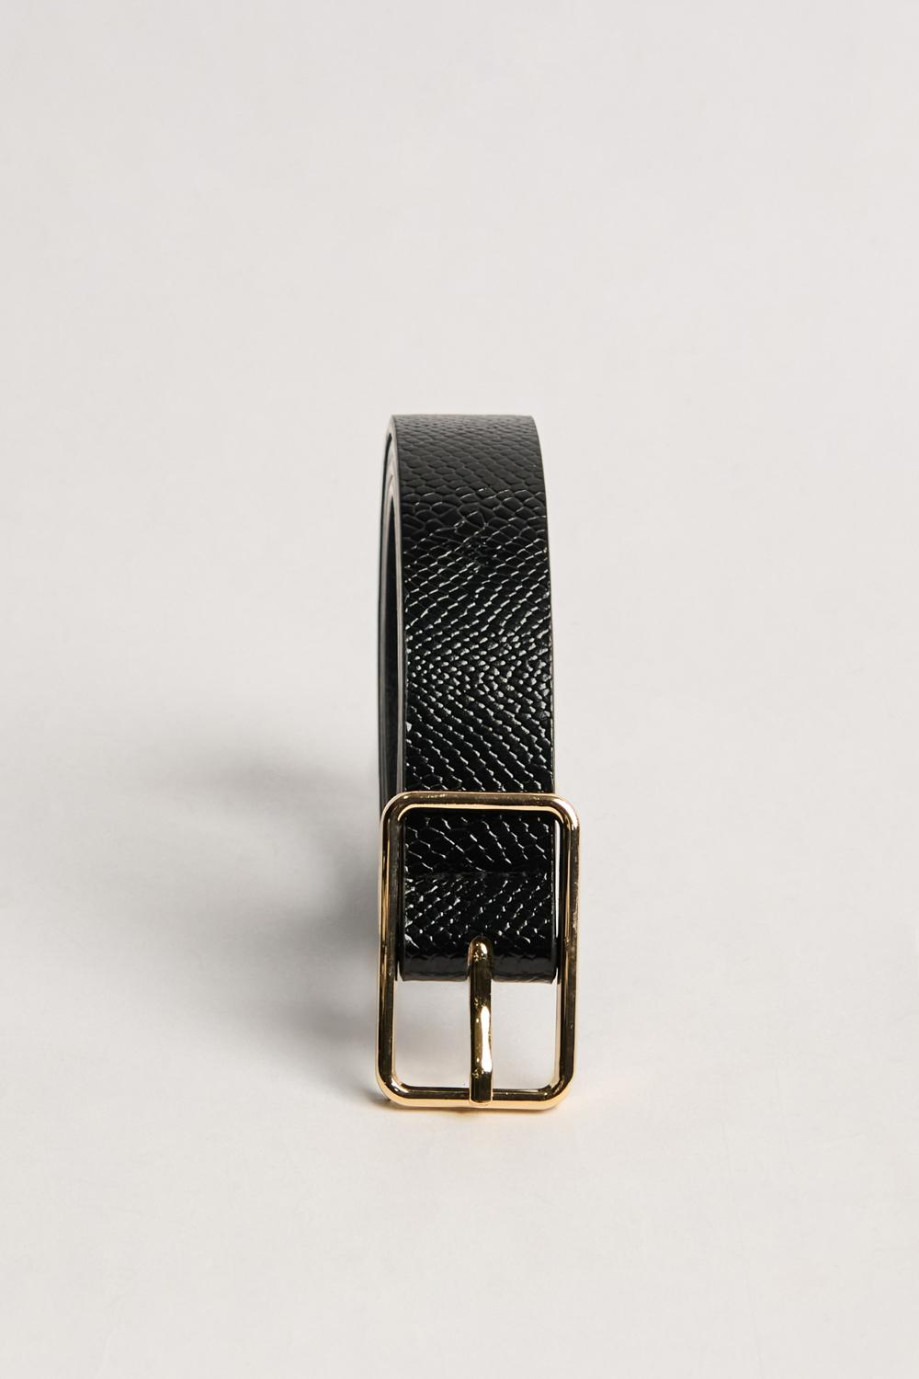 Cinturón negro texturizado con hebilla dorada metálica